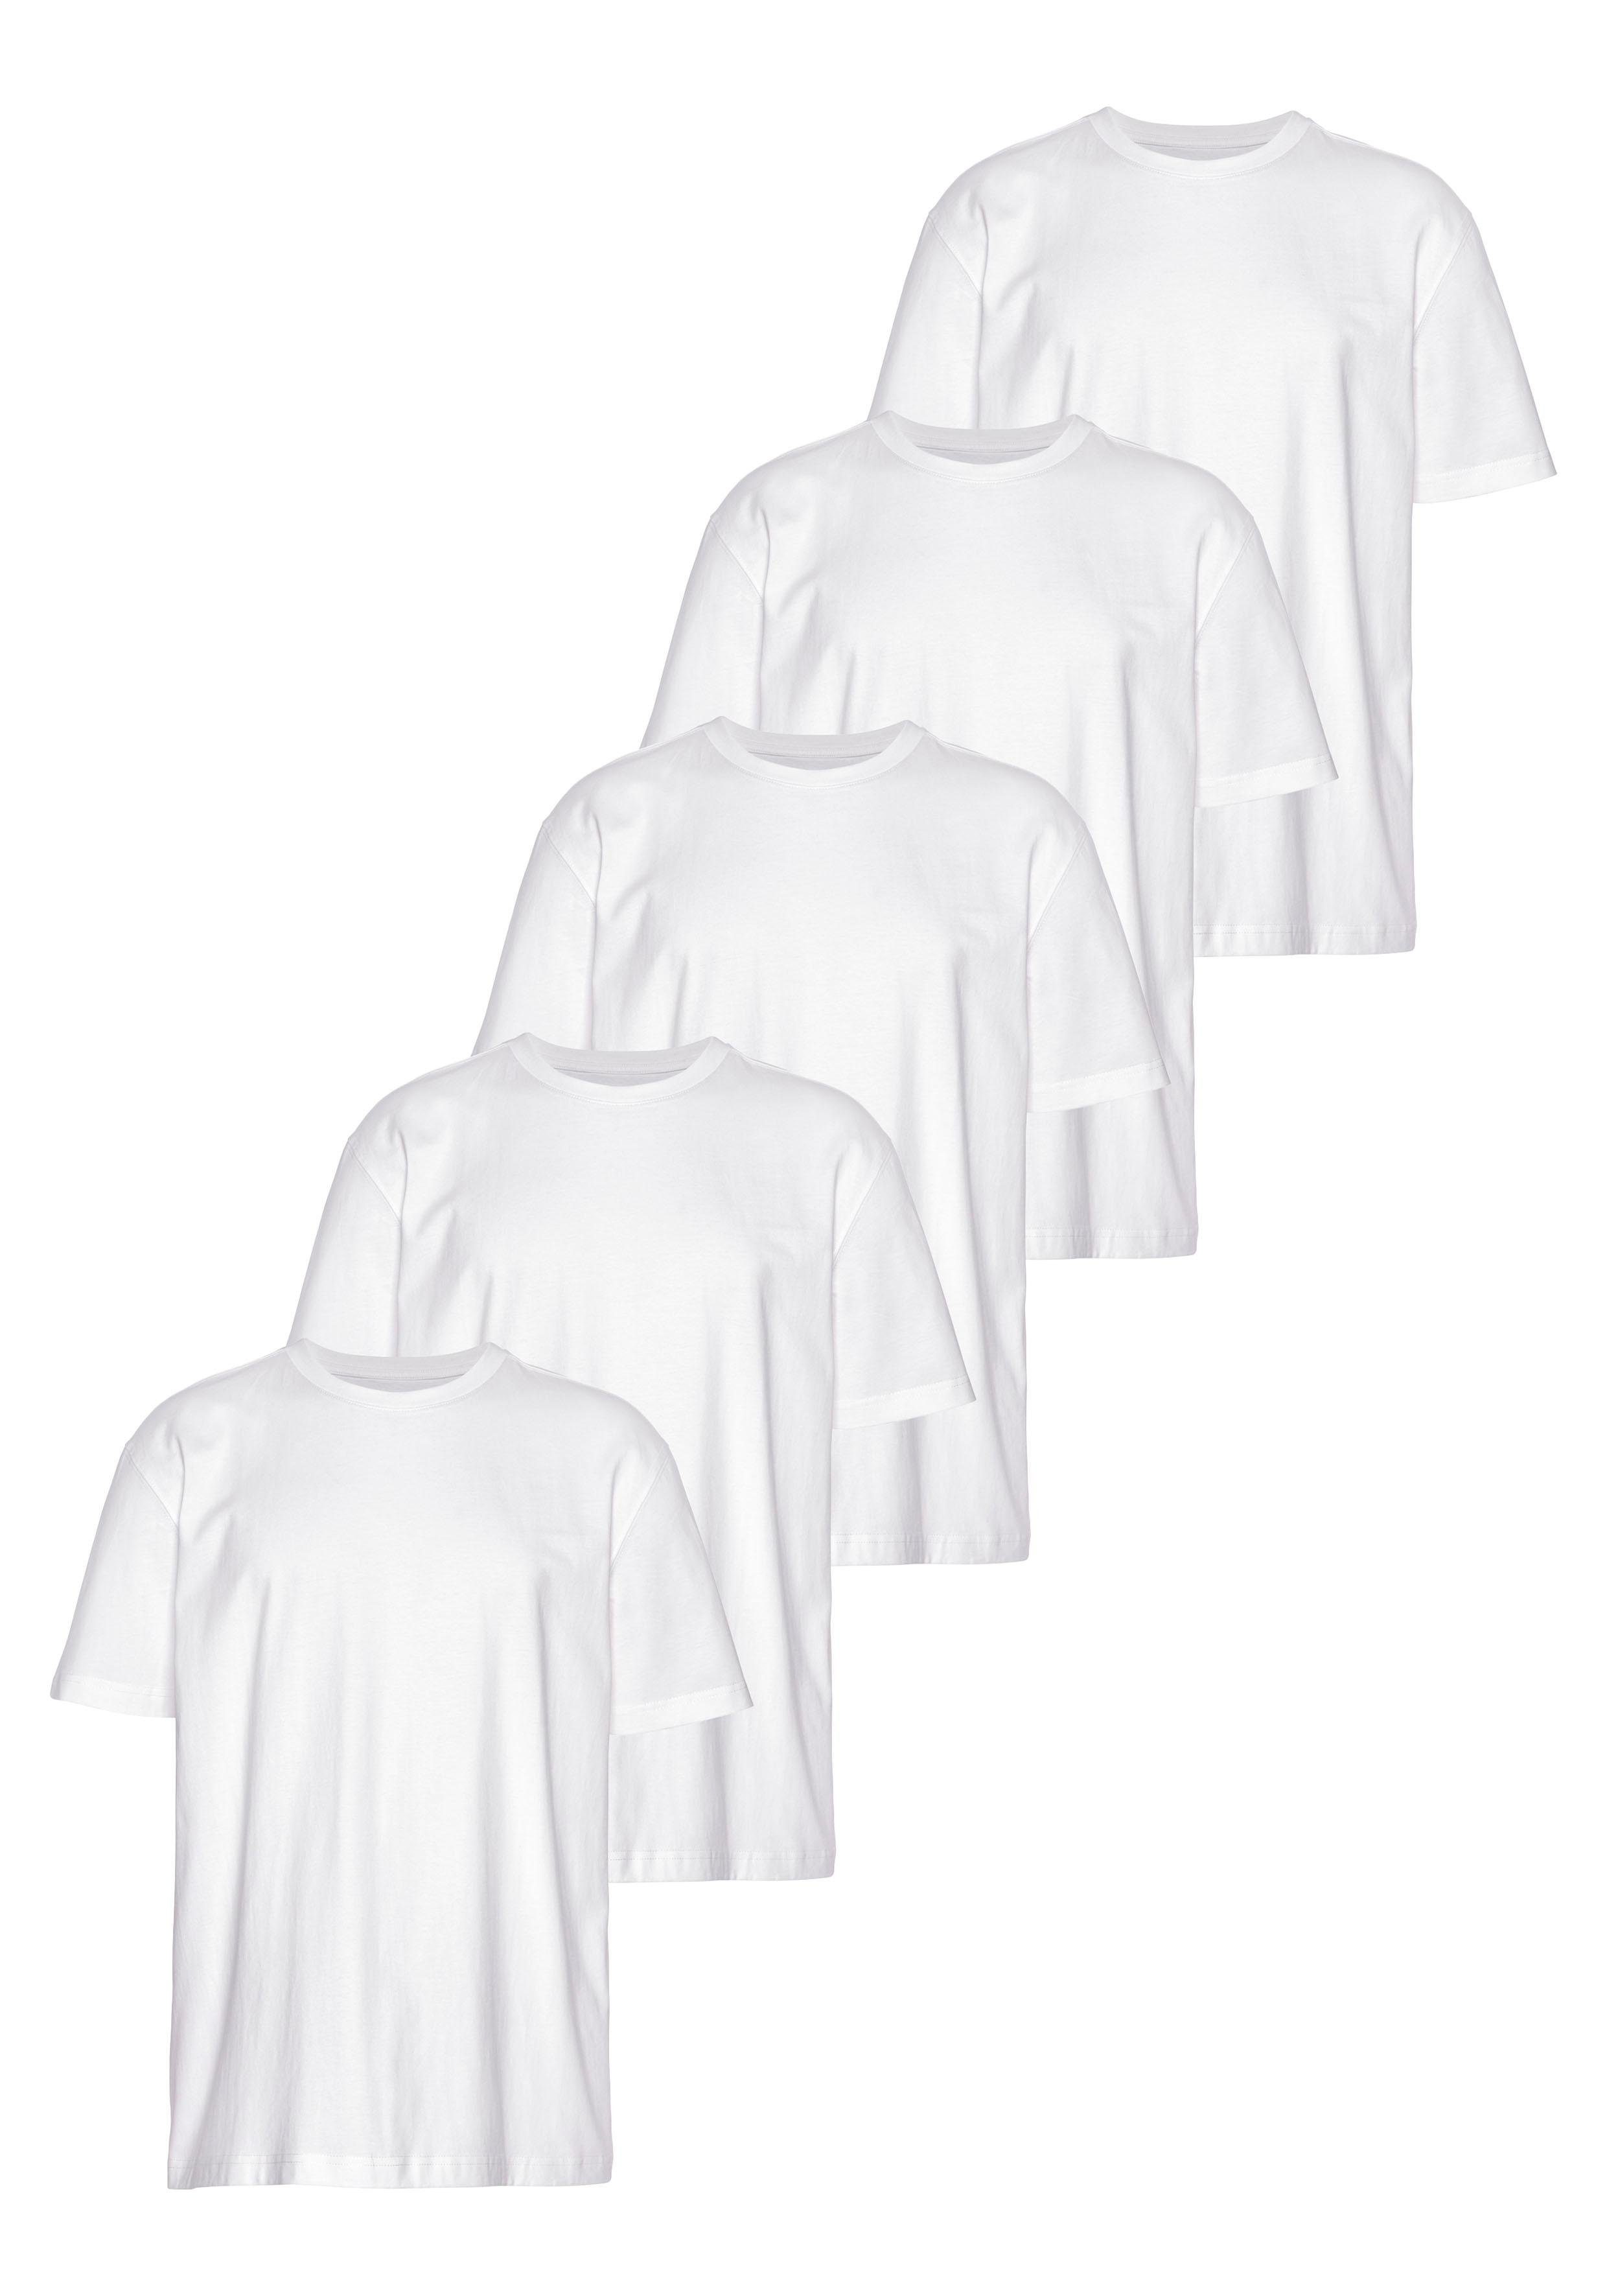 Man's World T-Shirt (Packung, 5-tlg., 5er-Pack) perfekt als Unterzieh- T-shirt weiß